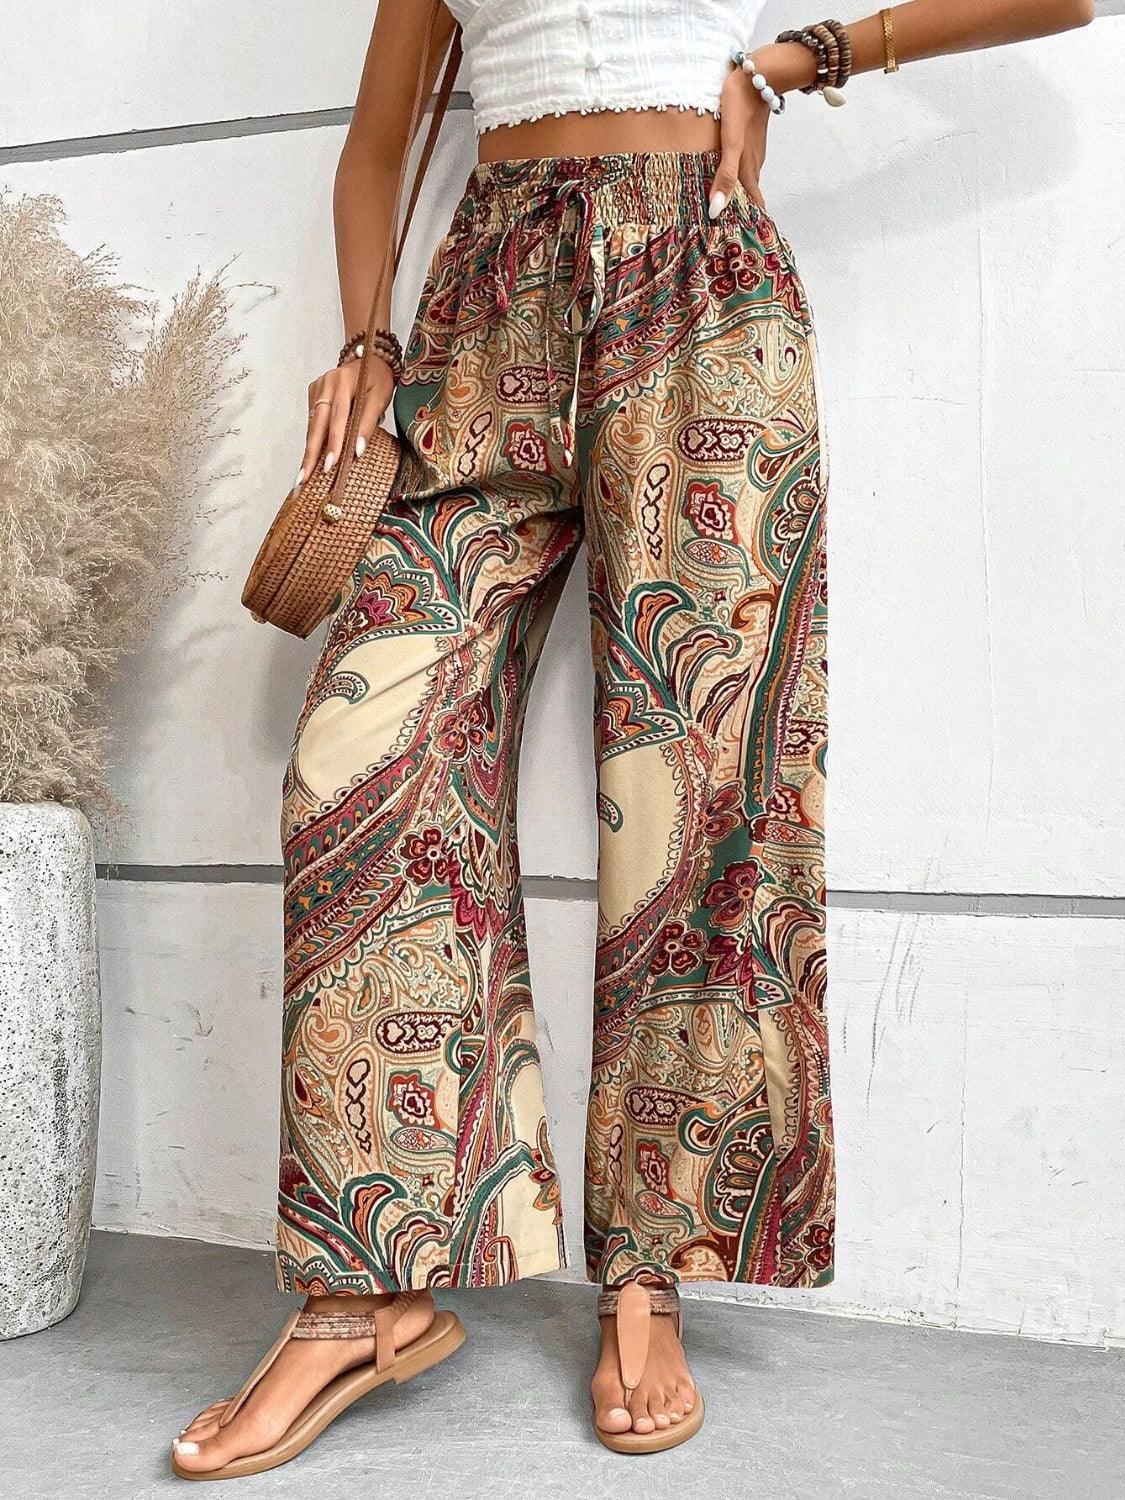 Bona Fide Fashion - Printed Wide Leg Pants - Women Fashion - Bona Fide Fashion